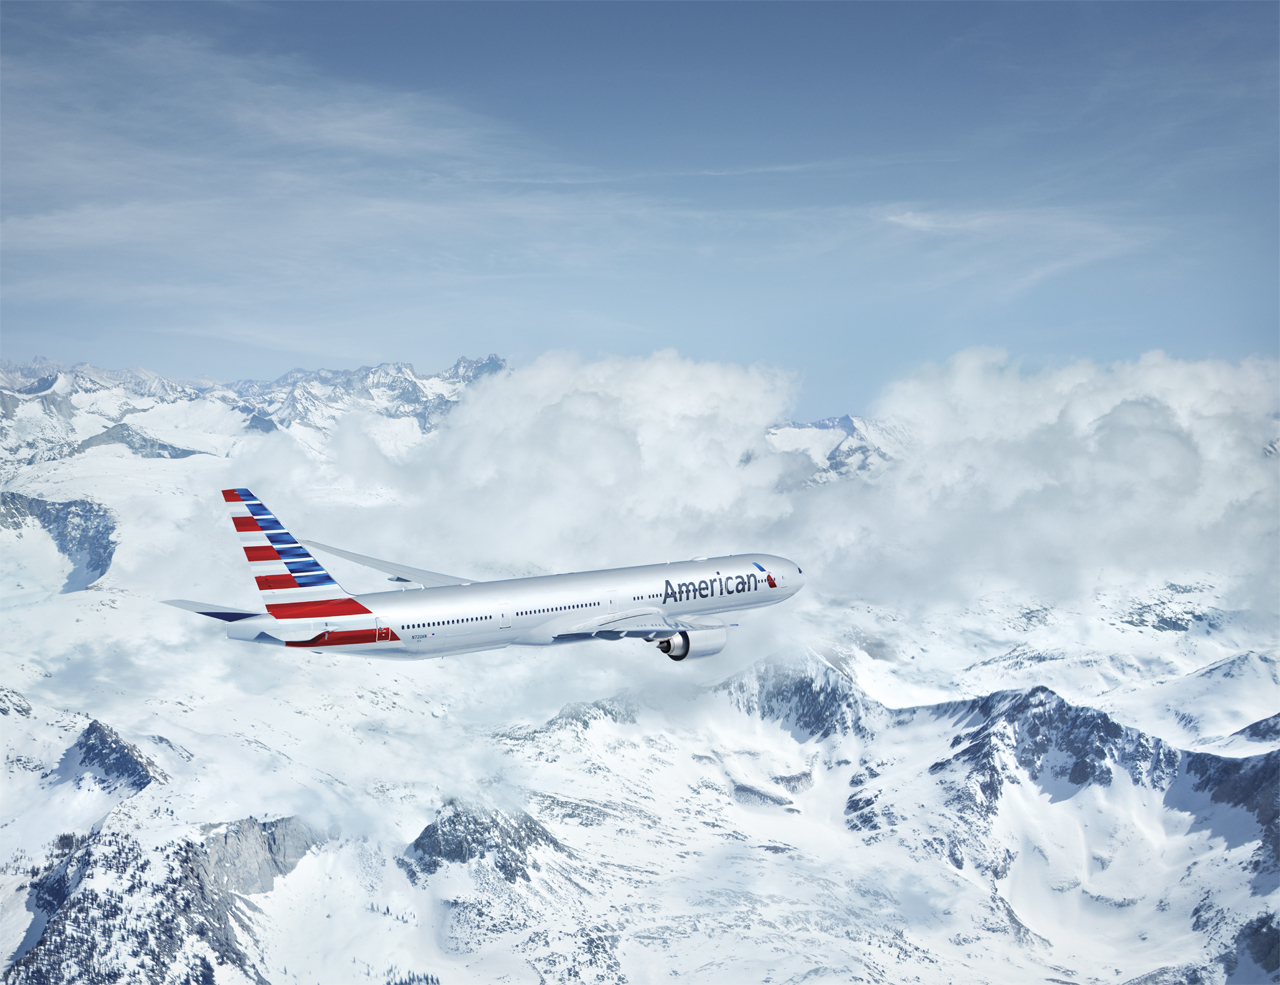 American Airlines festeggia i suoi dieci anni di collaborazione con l’agenzia di comunicazione integrata Martinengo Communication